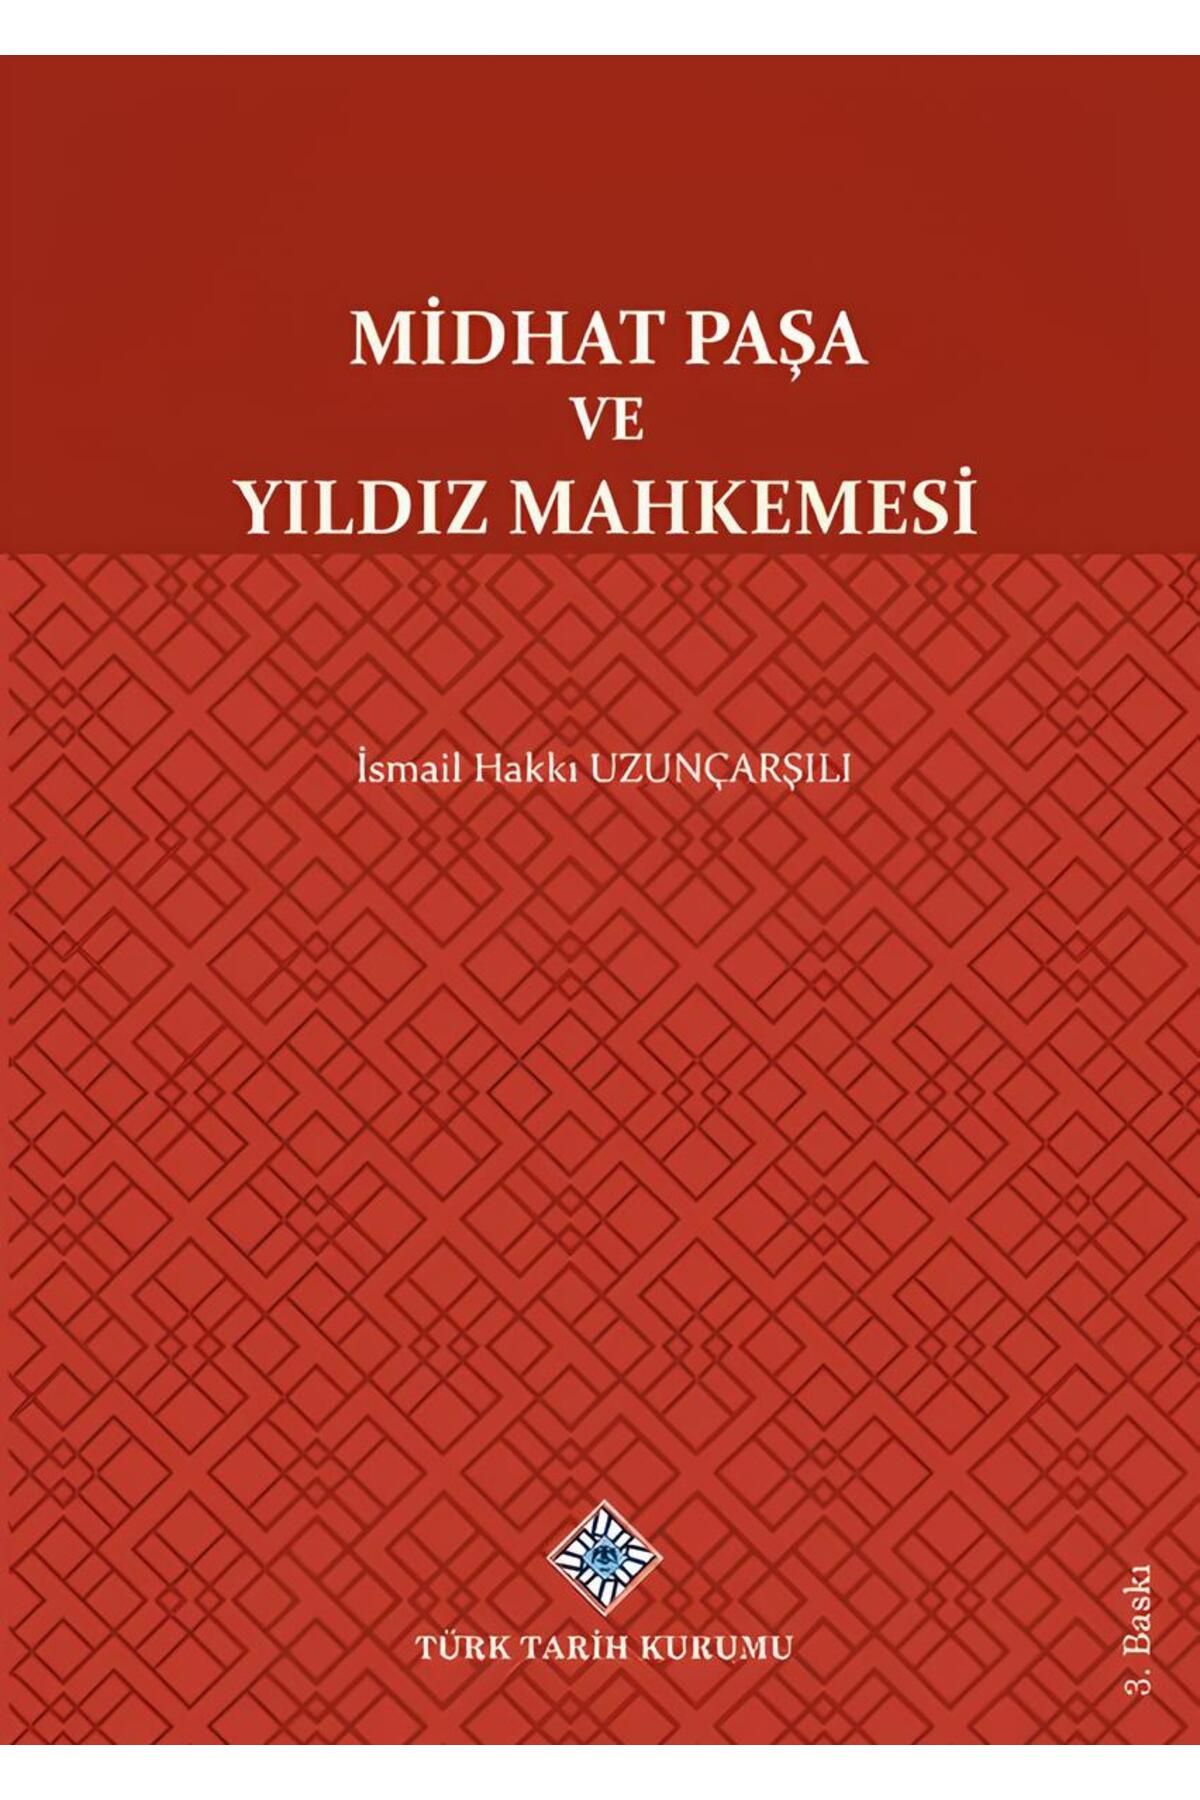 Türk Tarih Kurumu Yayınları Midhat Paşa Ve Yıldız Mahkemesi, 2021